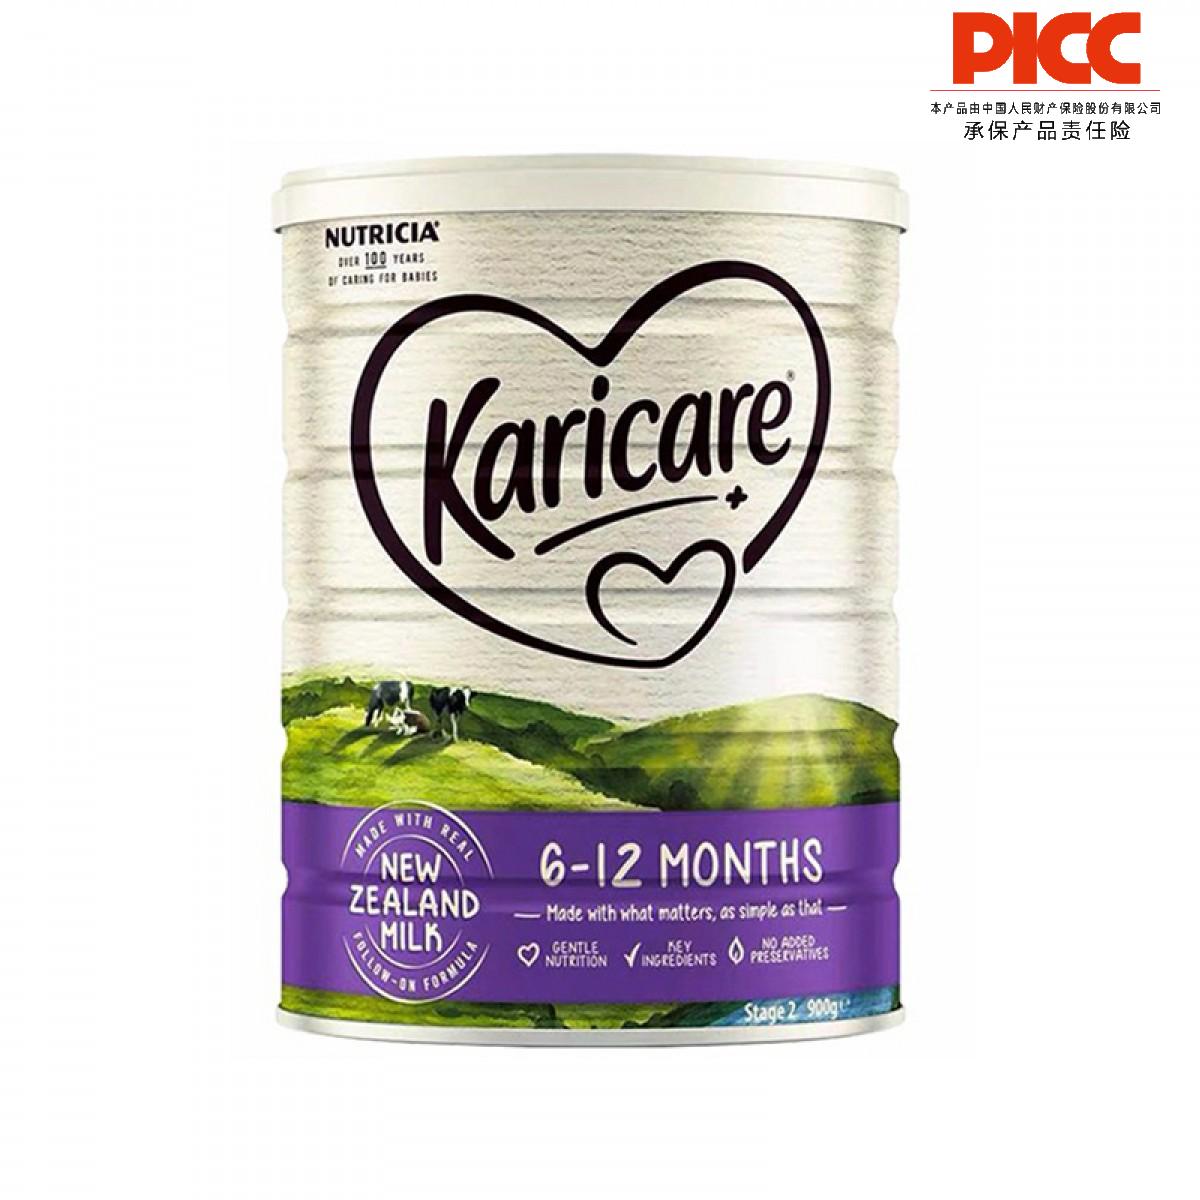 【保稅】澳洲可瑞康Karicare可瑞康普通裝牛奶粉2段900g